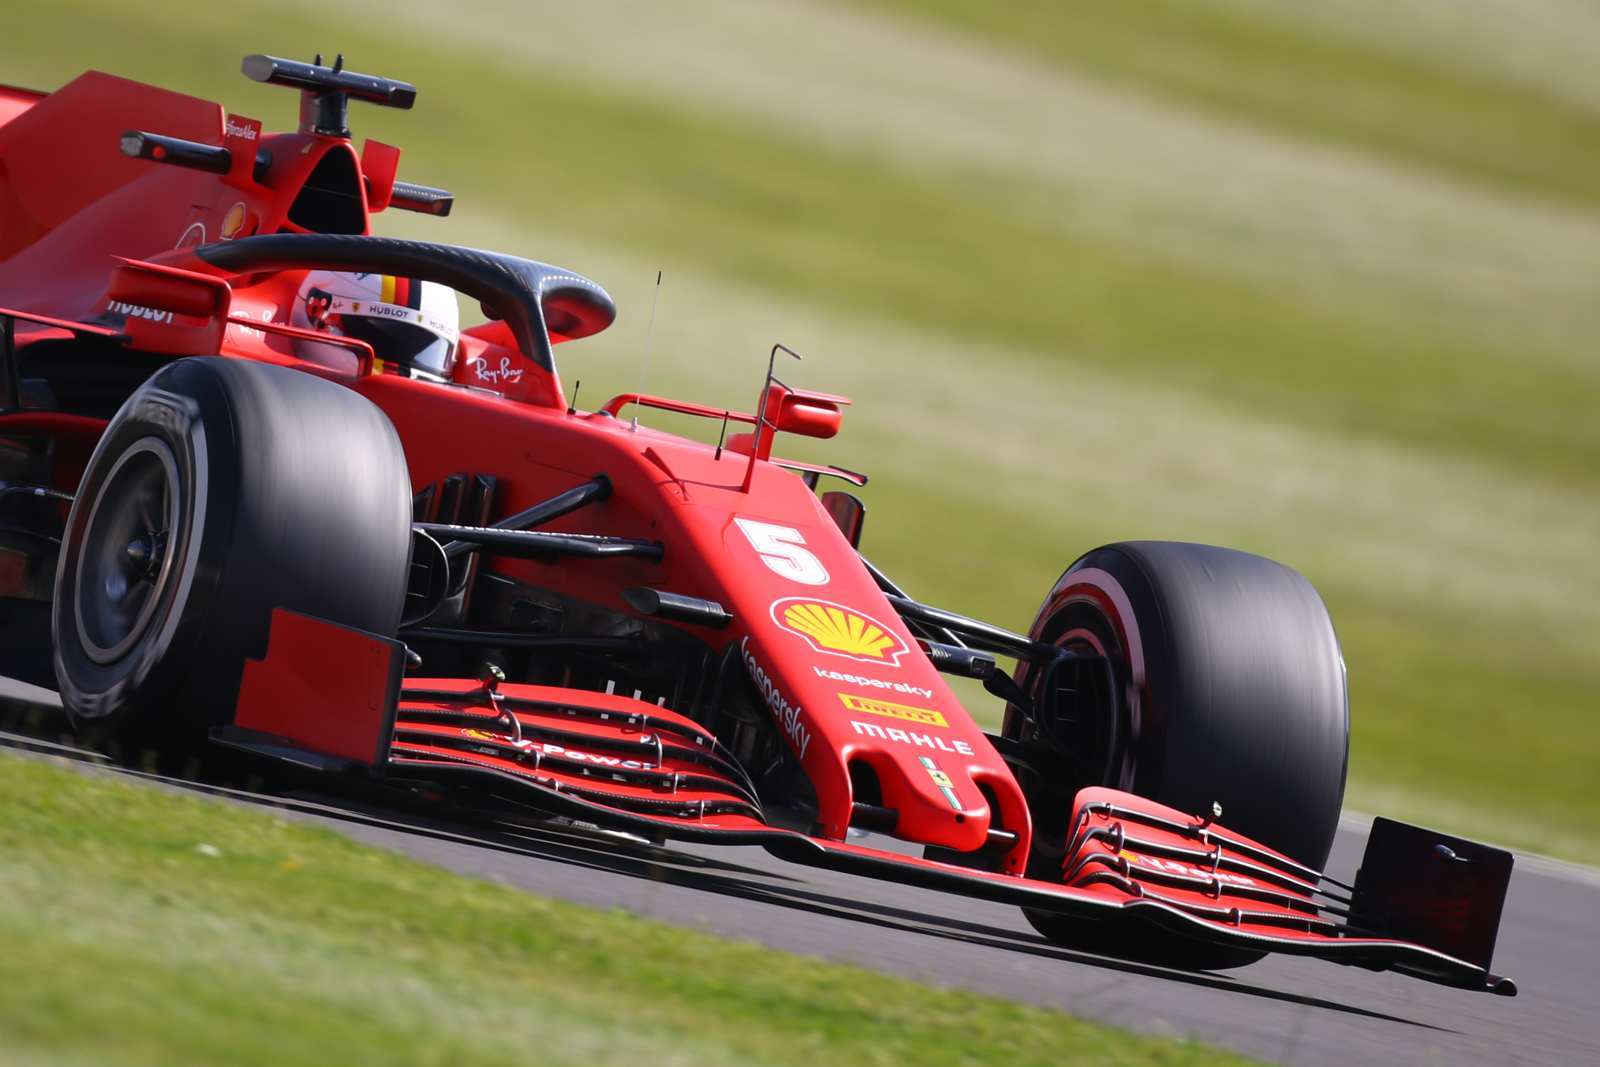 A sexta-feira foi complicada para o tetracampeão Sebastian Vettel. Muitos problemas no carro e apenas 18º